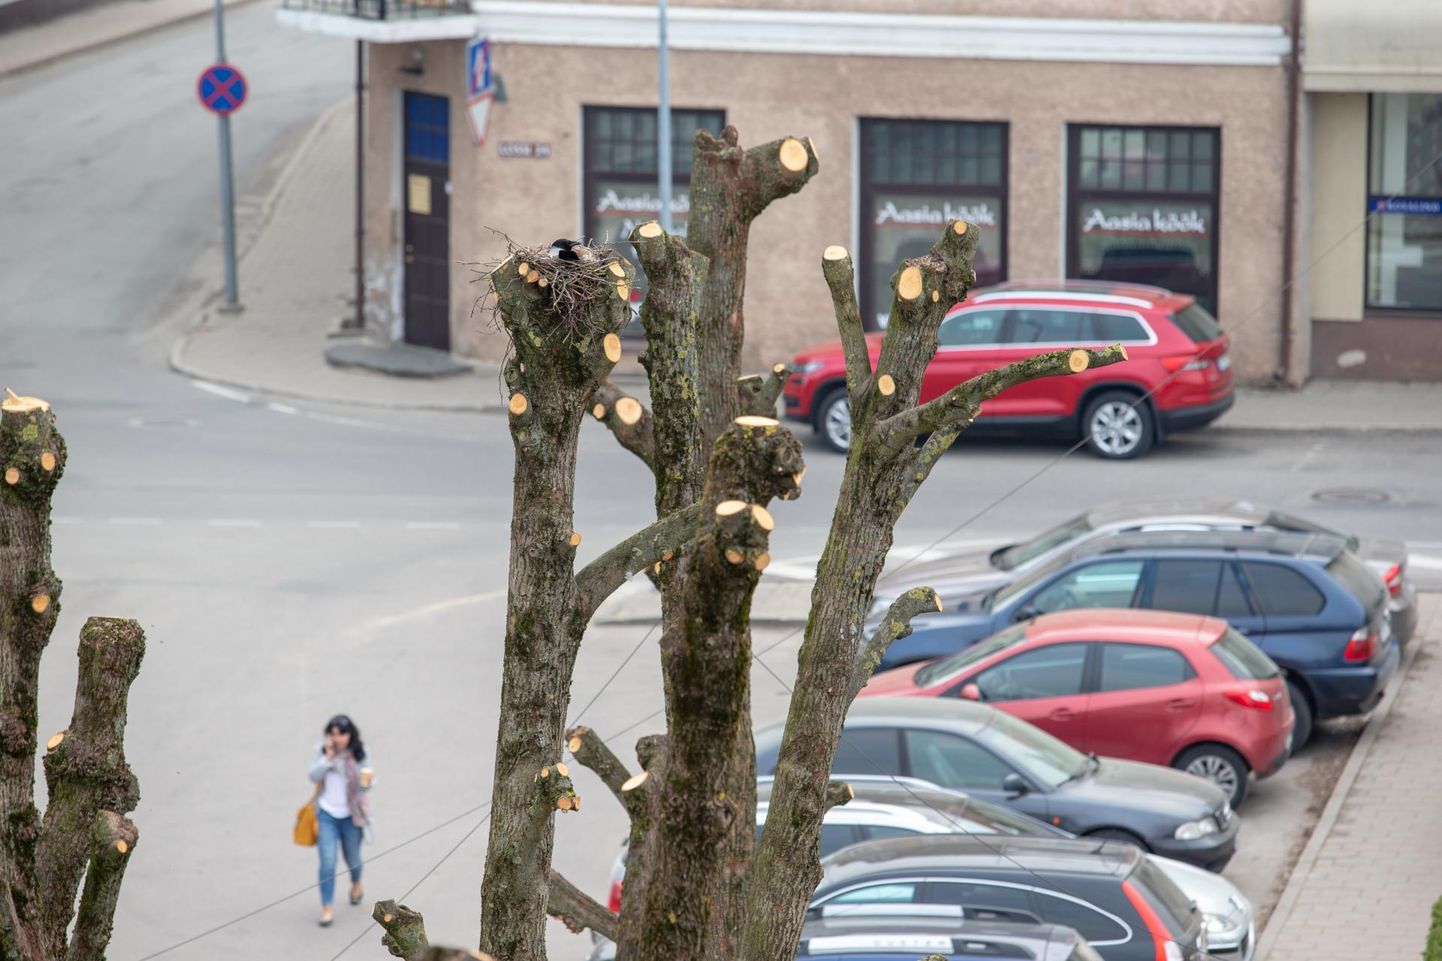 Viljandis Tartu tänaval puid kärpides avastas arborist hallvarese pesa, kus olid munad sees. Ta jättis pesa ümber oksatüükaid, et see püsiks.